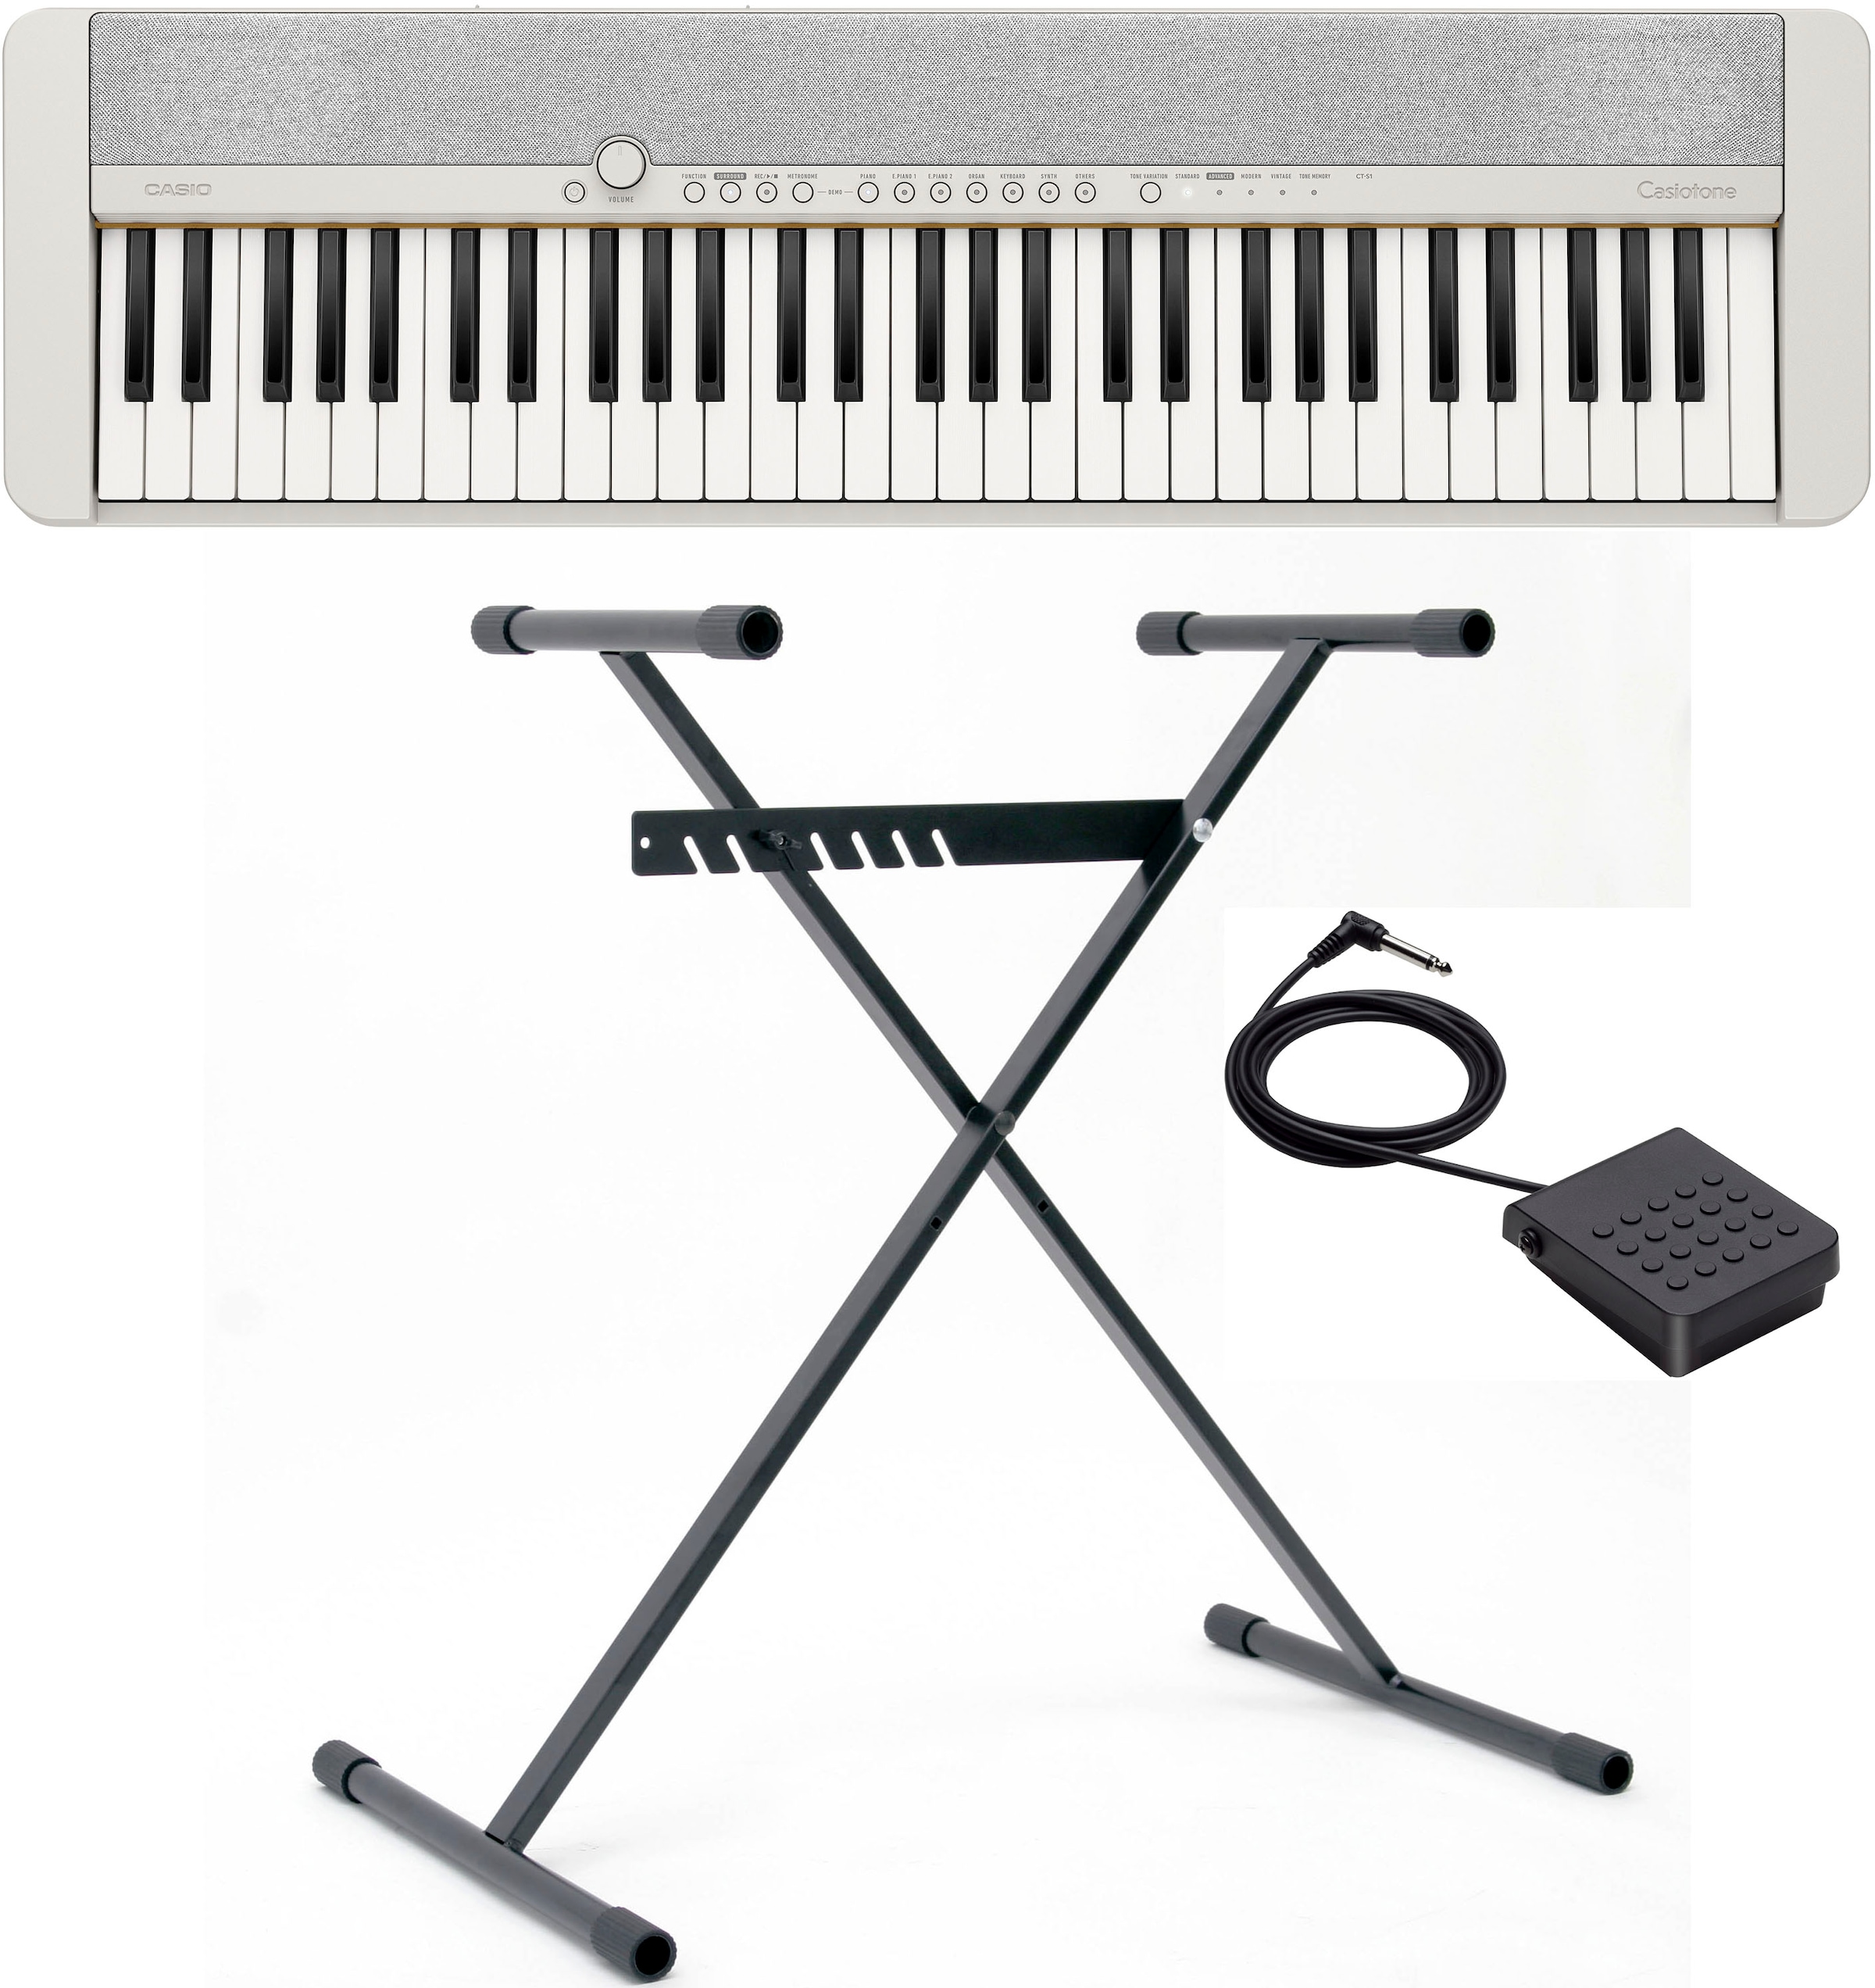 Casio Keyboards & Digitalpianos bei | Keyboardtaschen